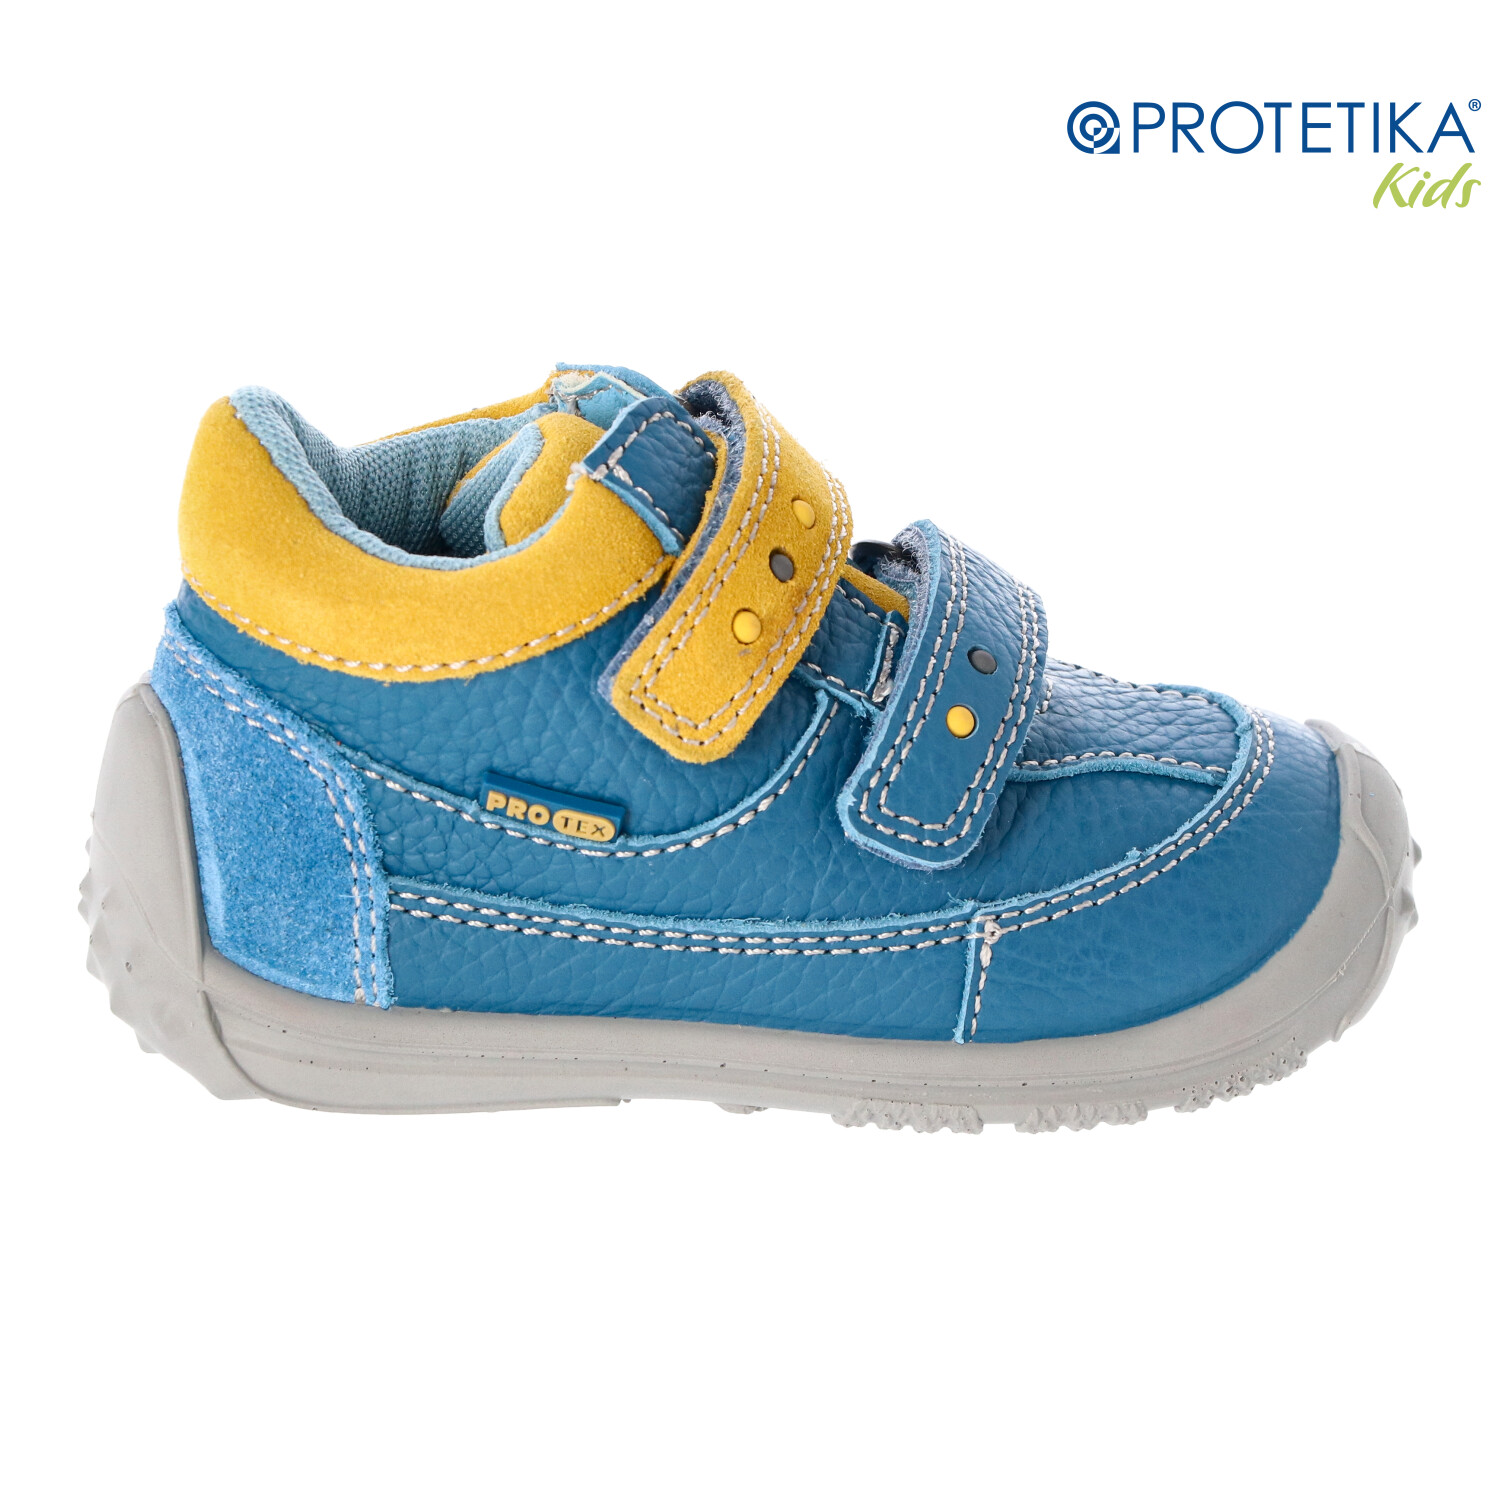 Protetika - topánky s membránou PRO-tex FOSTER